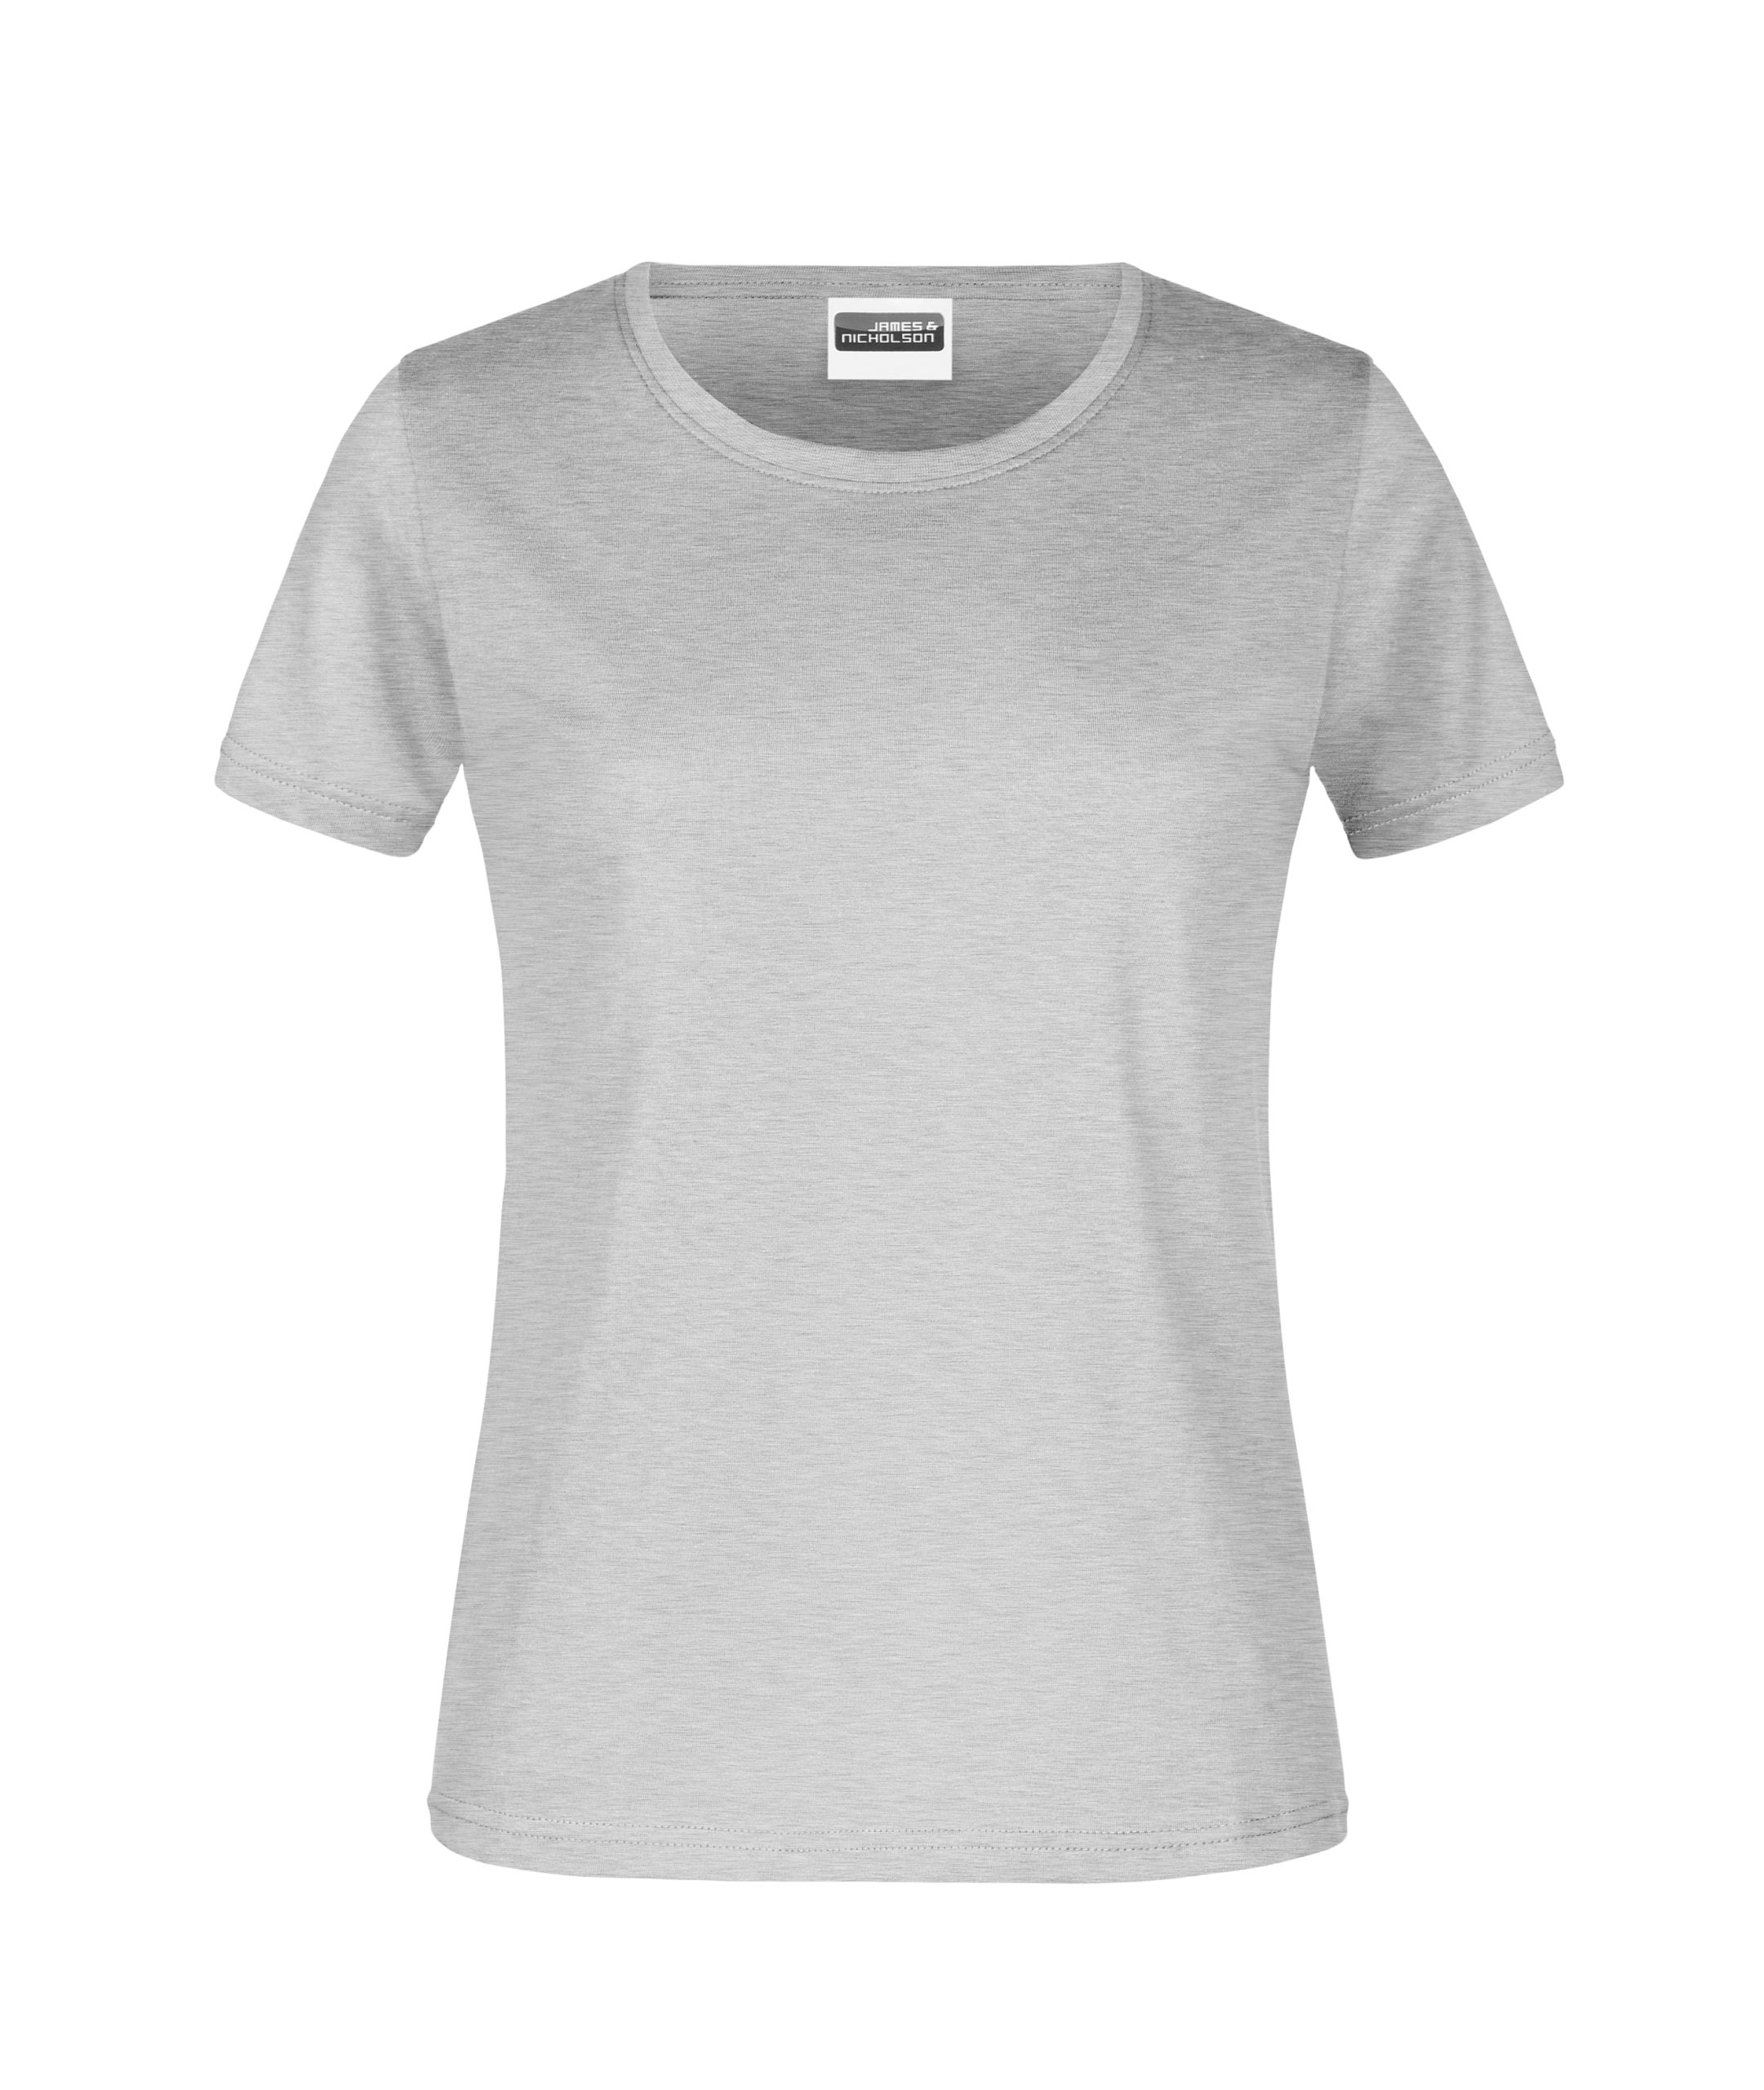 T-Shirt Lady heather grey 180 Bestens Beworben - gr